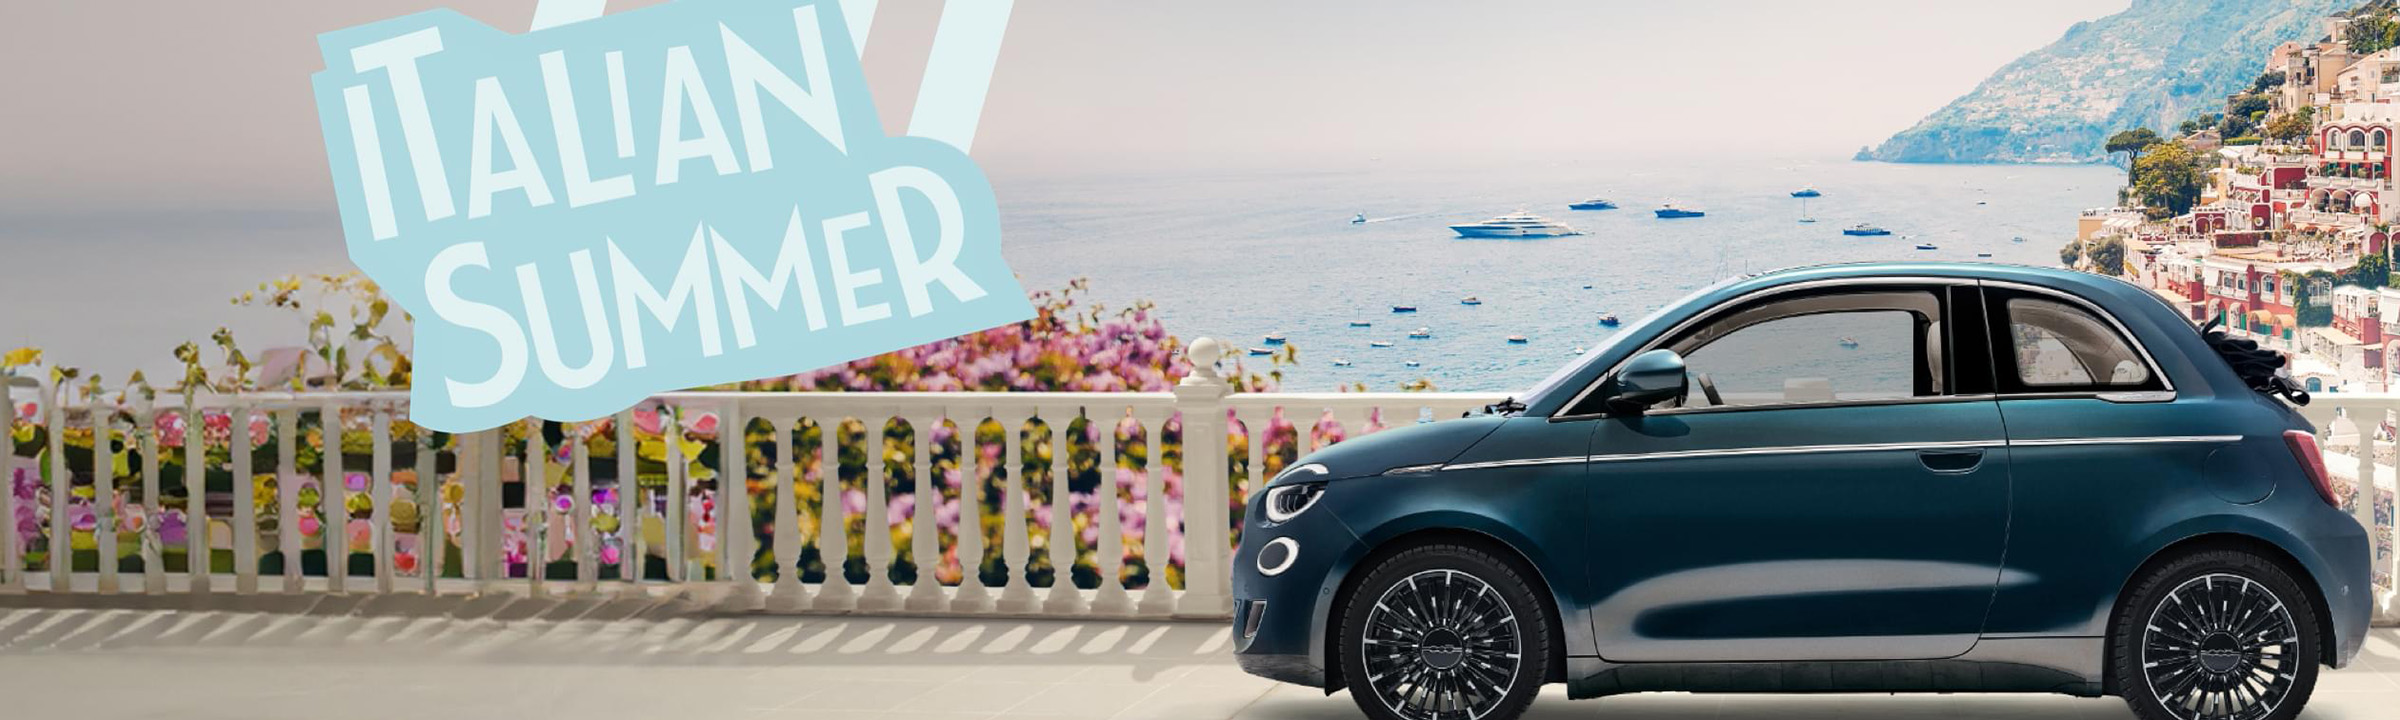 Italian Summer: Ongekend veel voordeel bij Fiat!